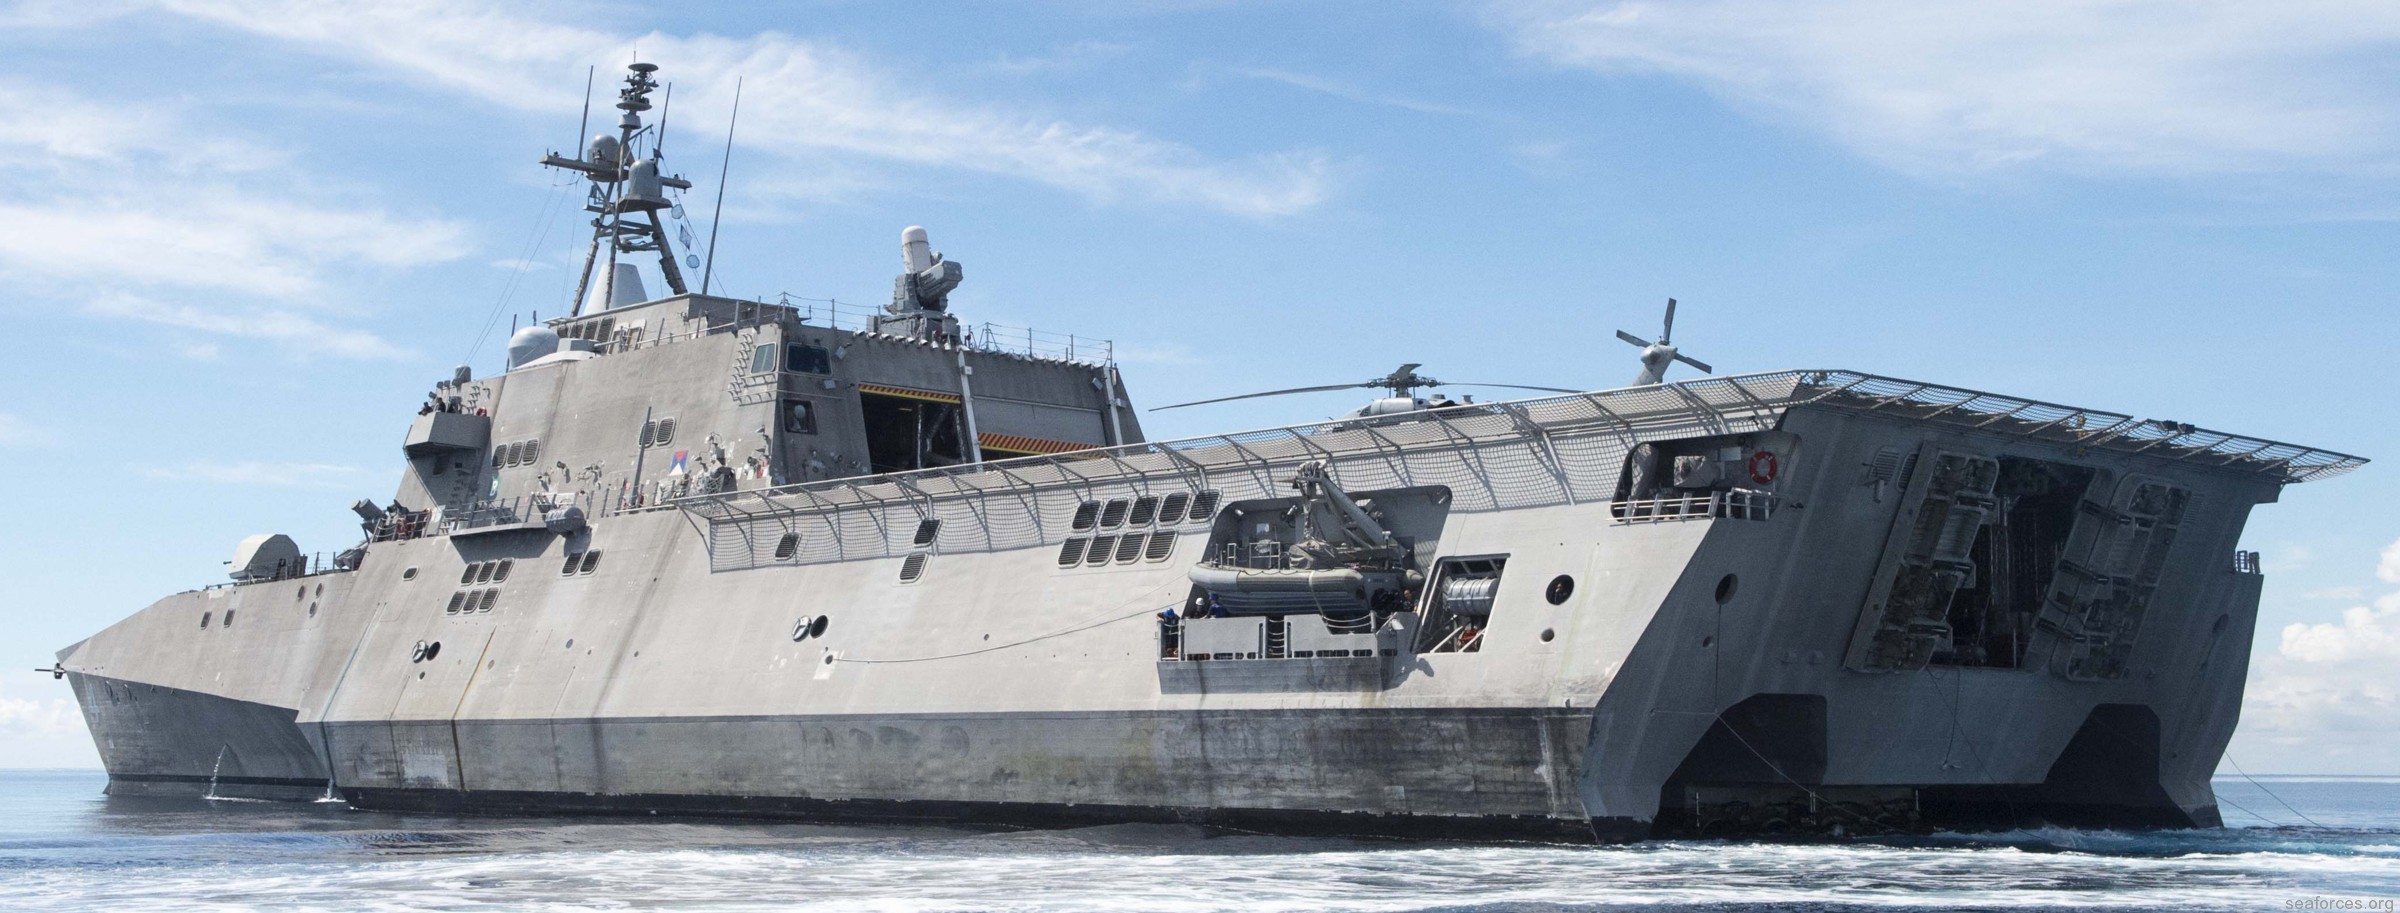 فئة الاستقلال السفينة القتالية الساحلية الأمريكية البحرية الأسترالية 17C